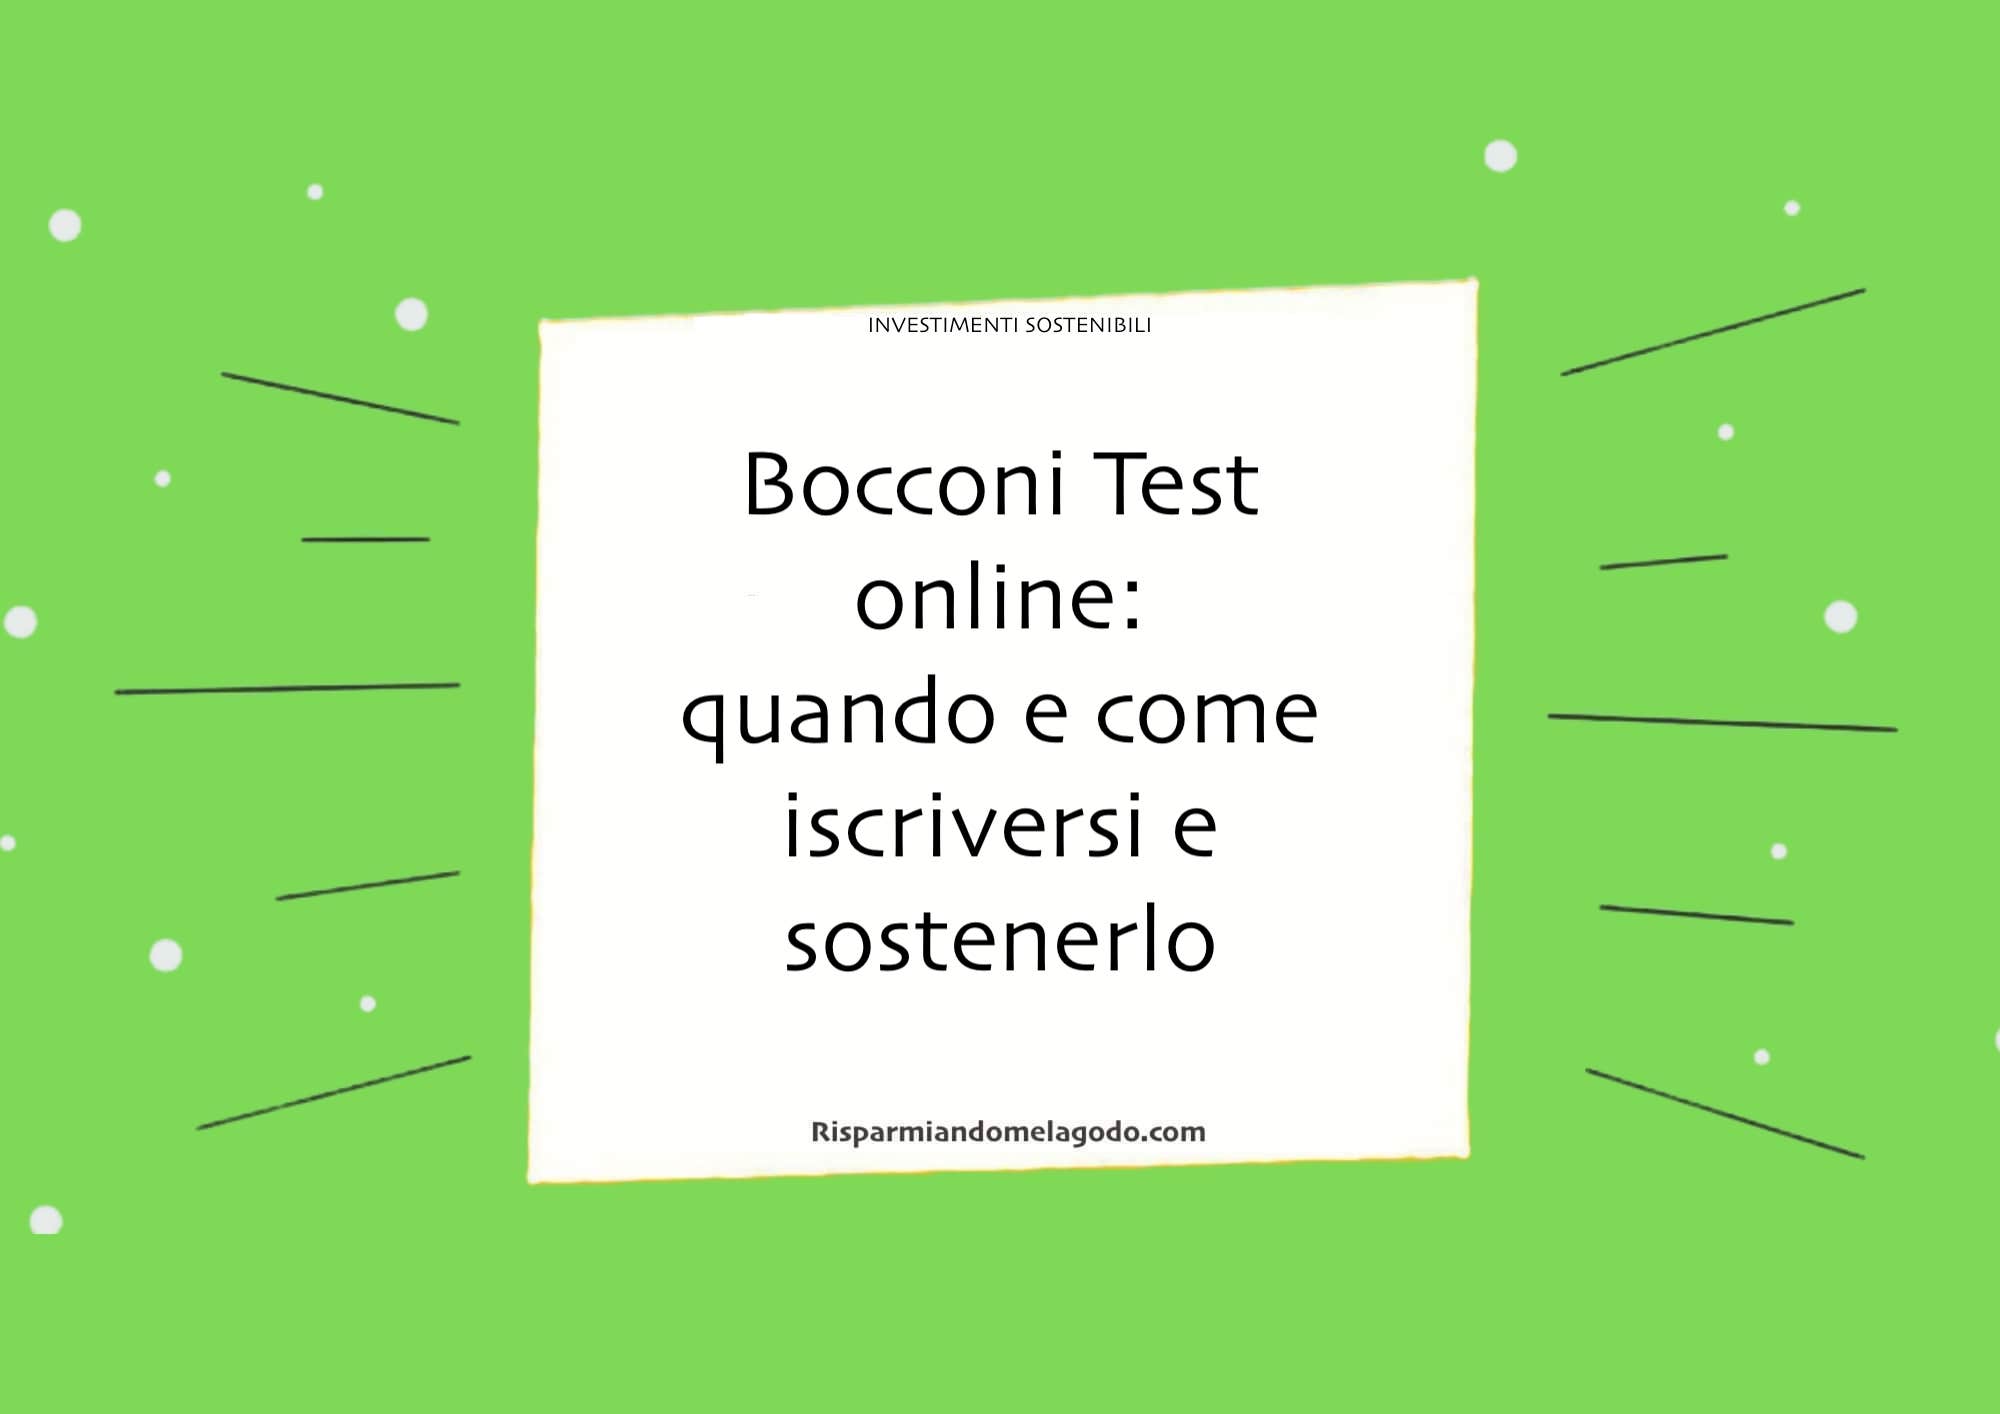 Bocconi Test online